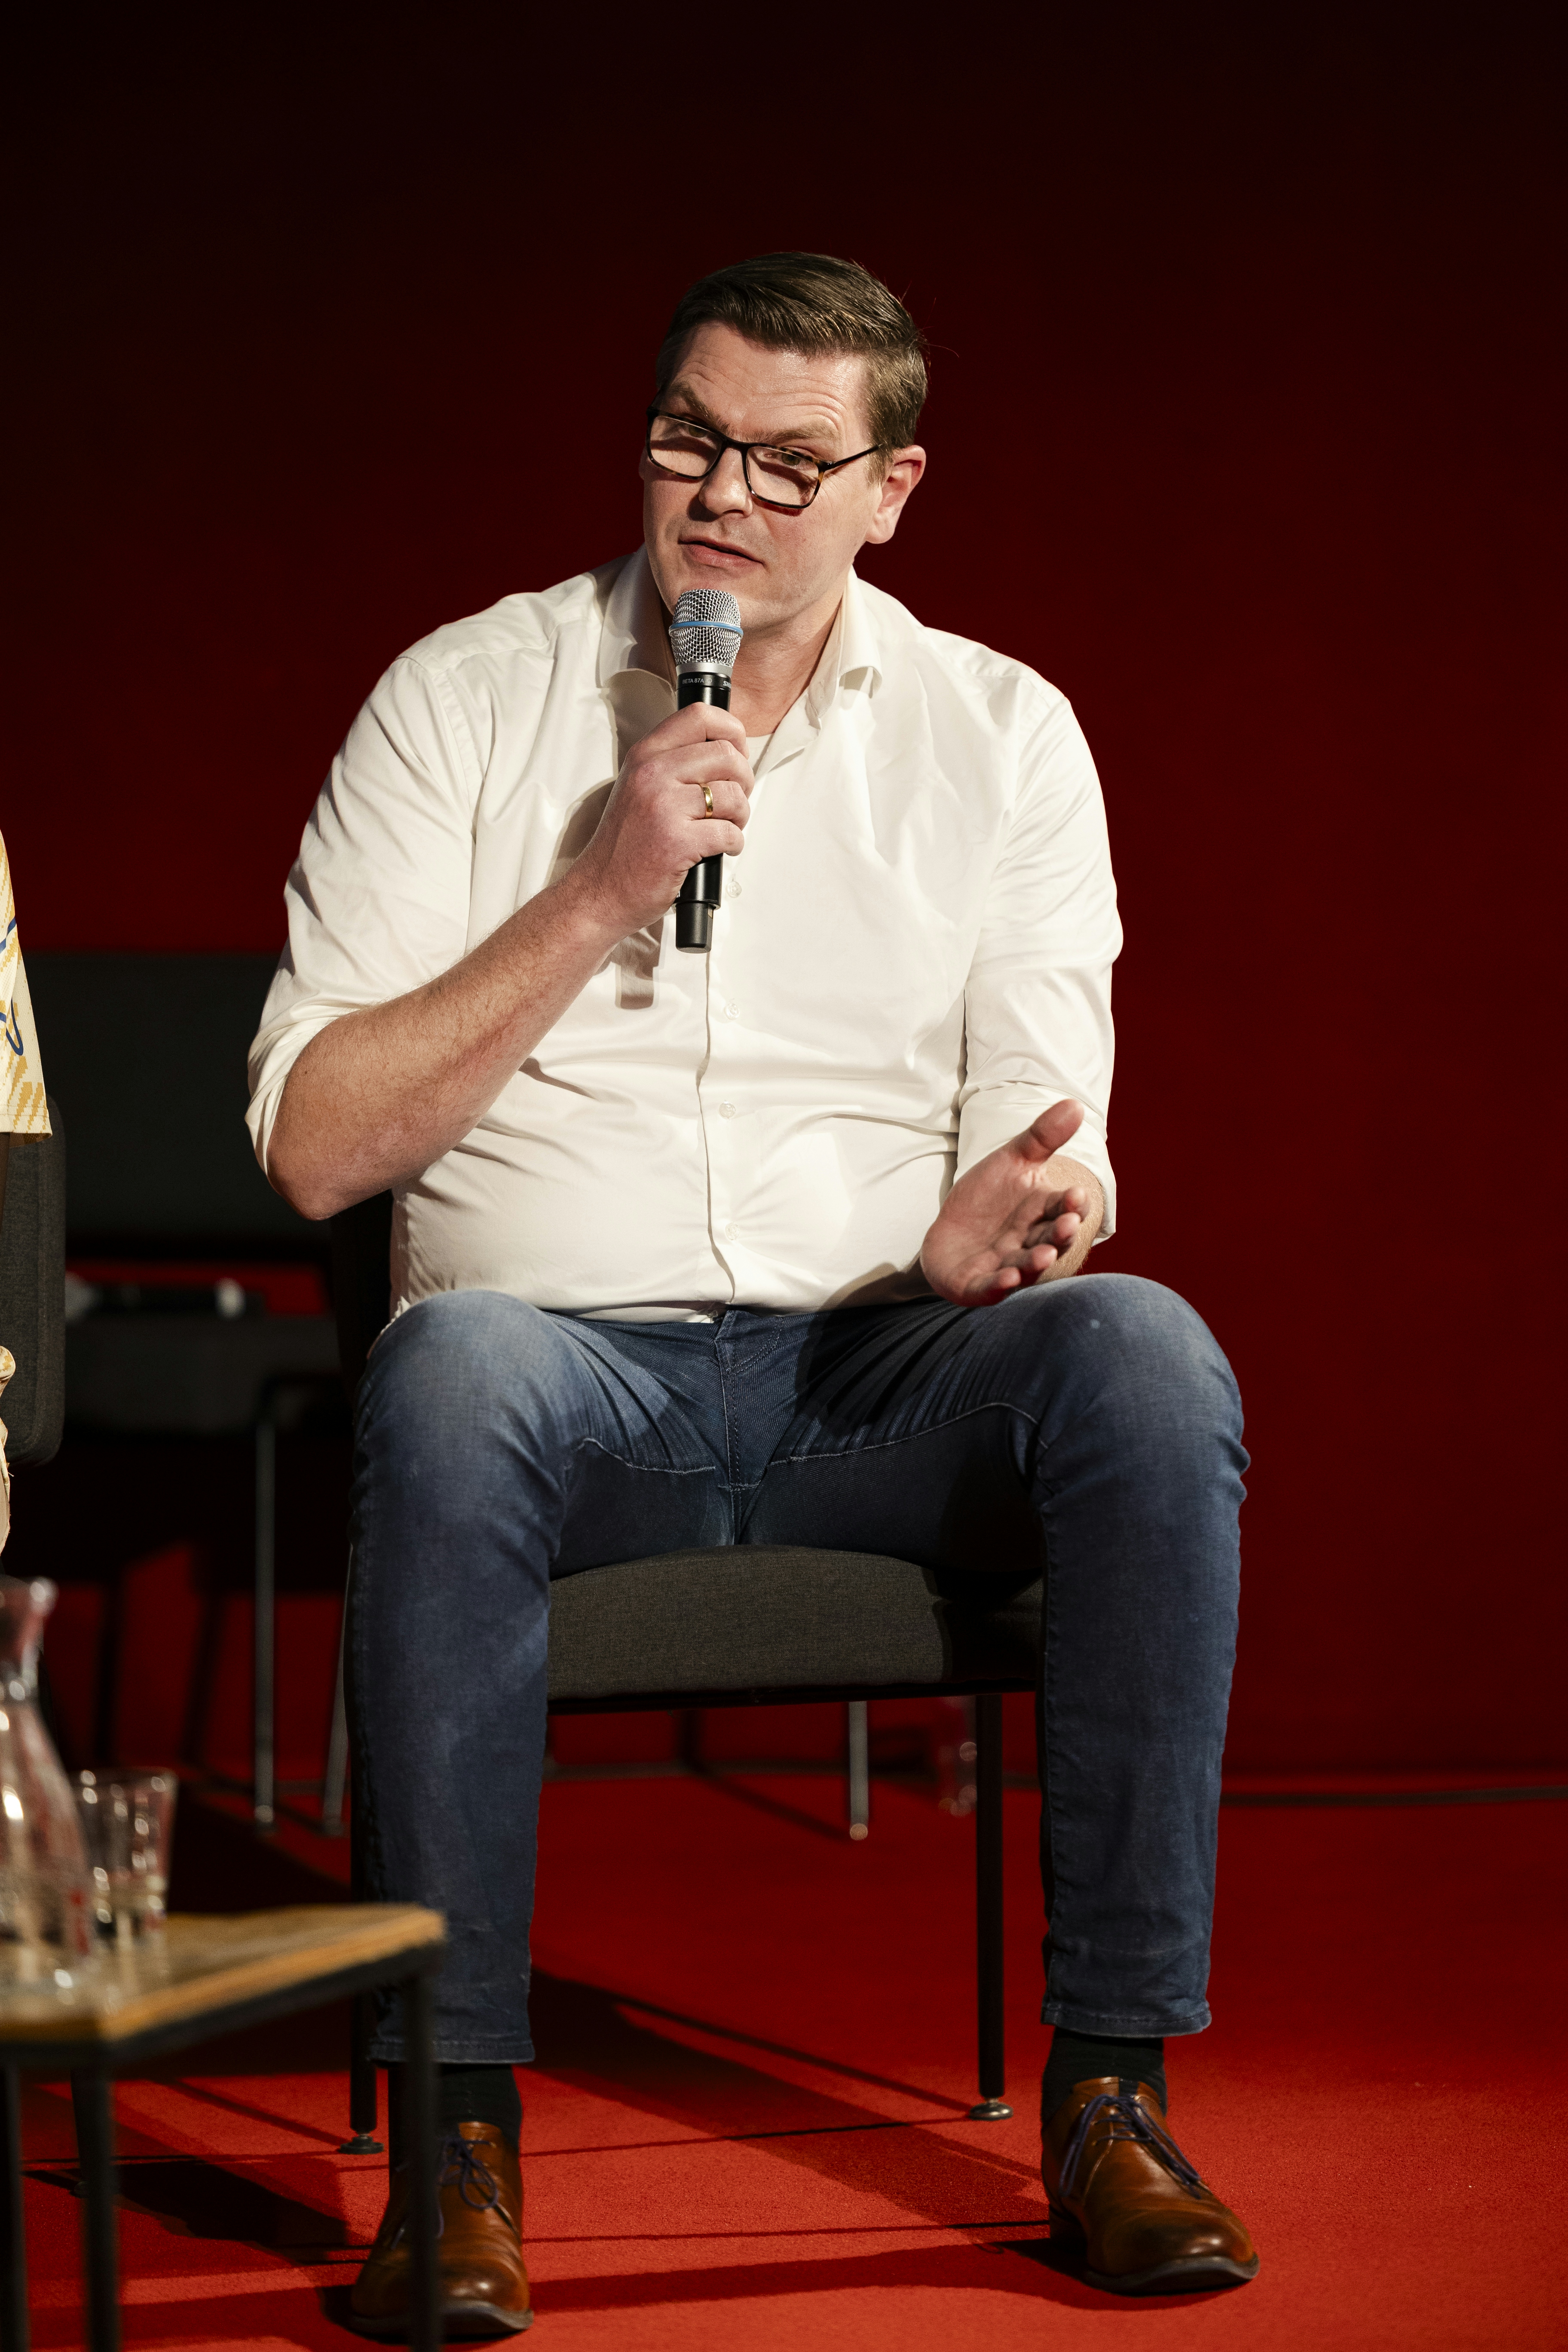 Panelist Peter van Tarel